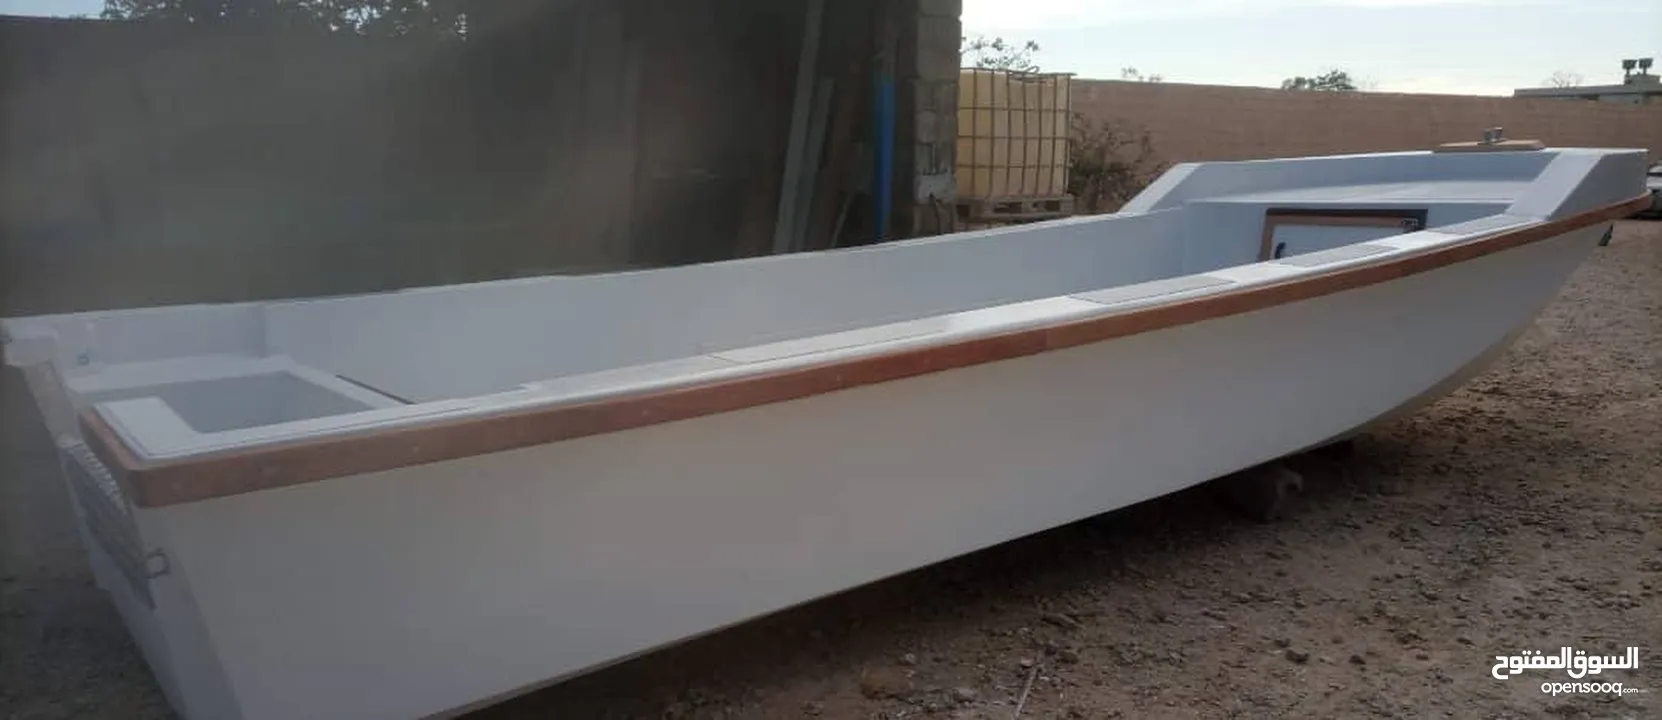 قارب فايير بالكامل 8 متر دوري عرض 2.5  جديد من المصنع بشهادة منشأ وفي 7 و 6 نفس التصميم